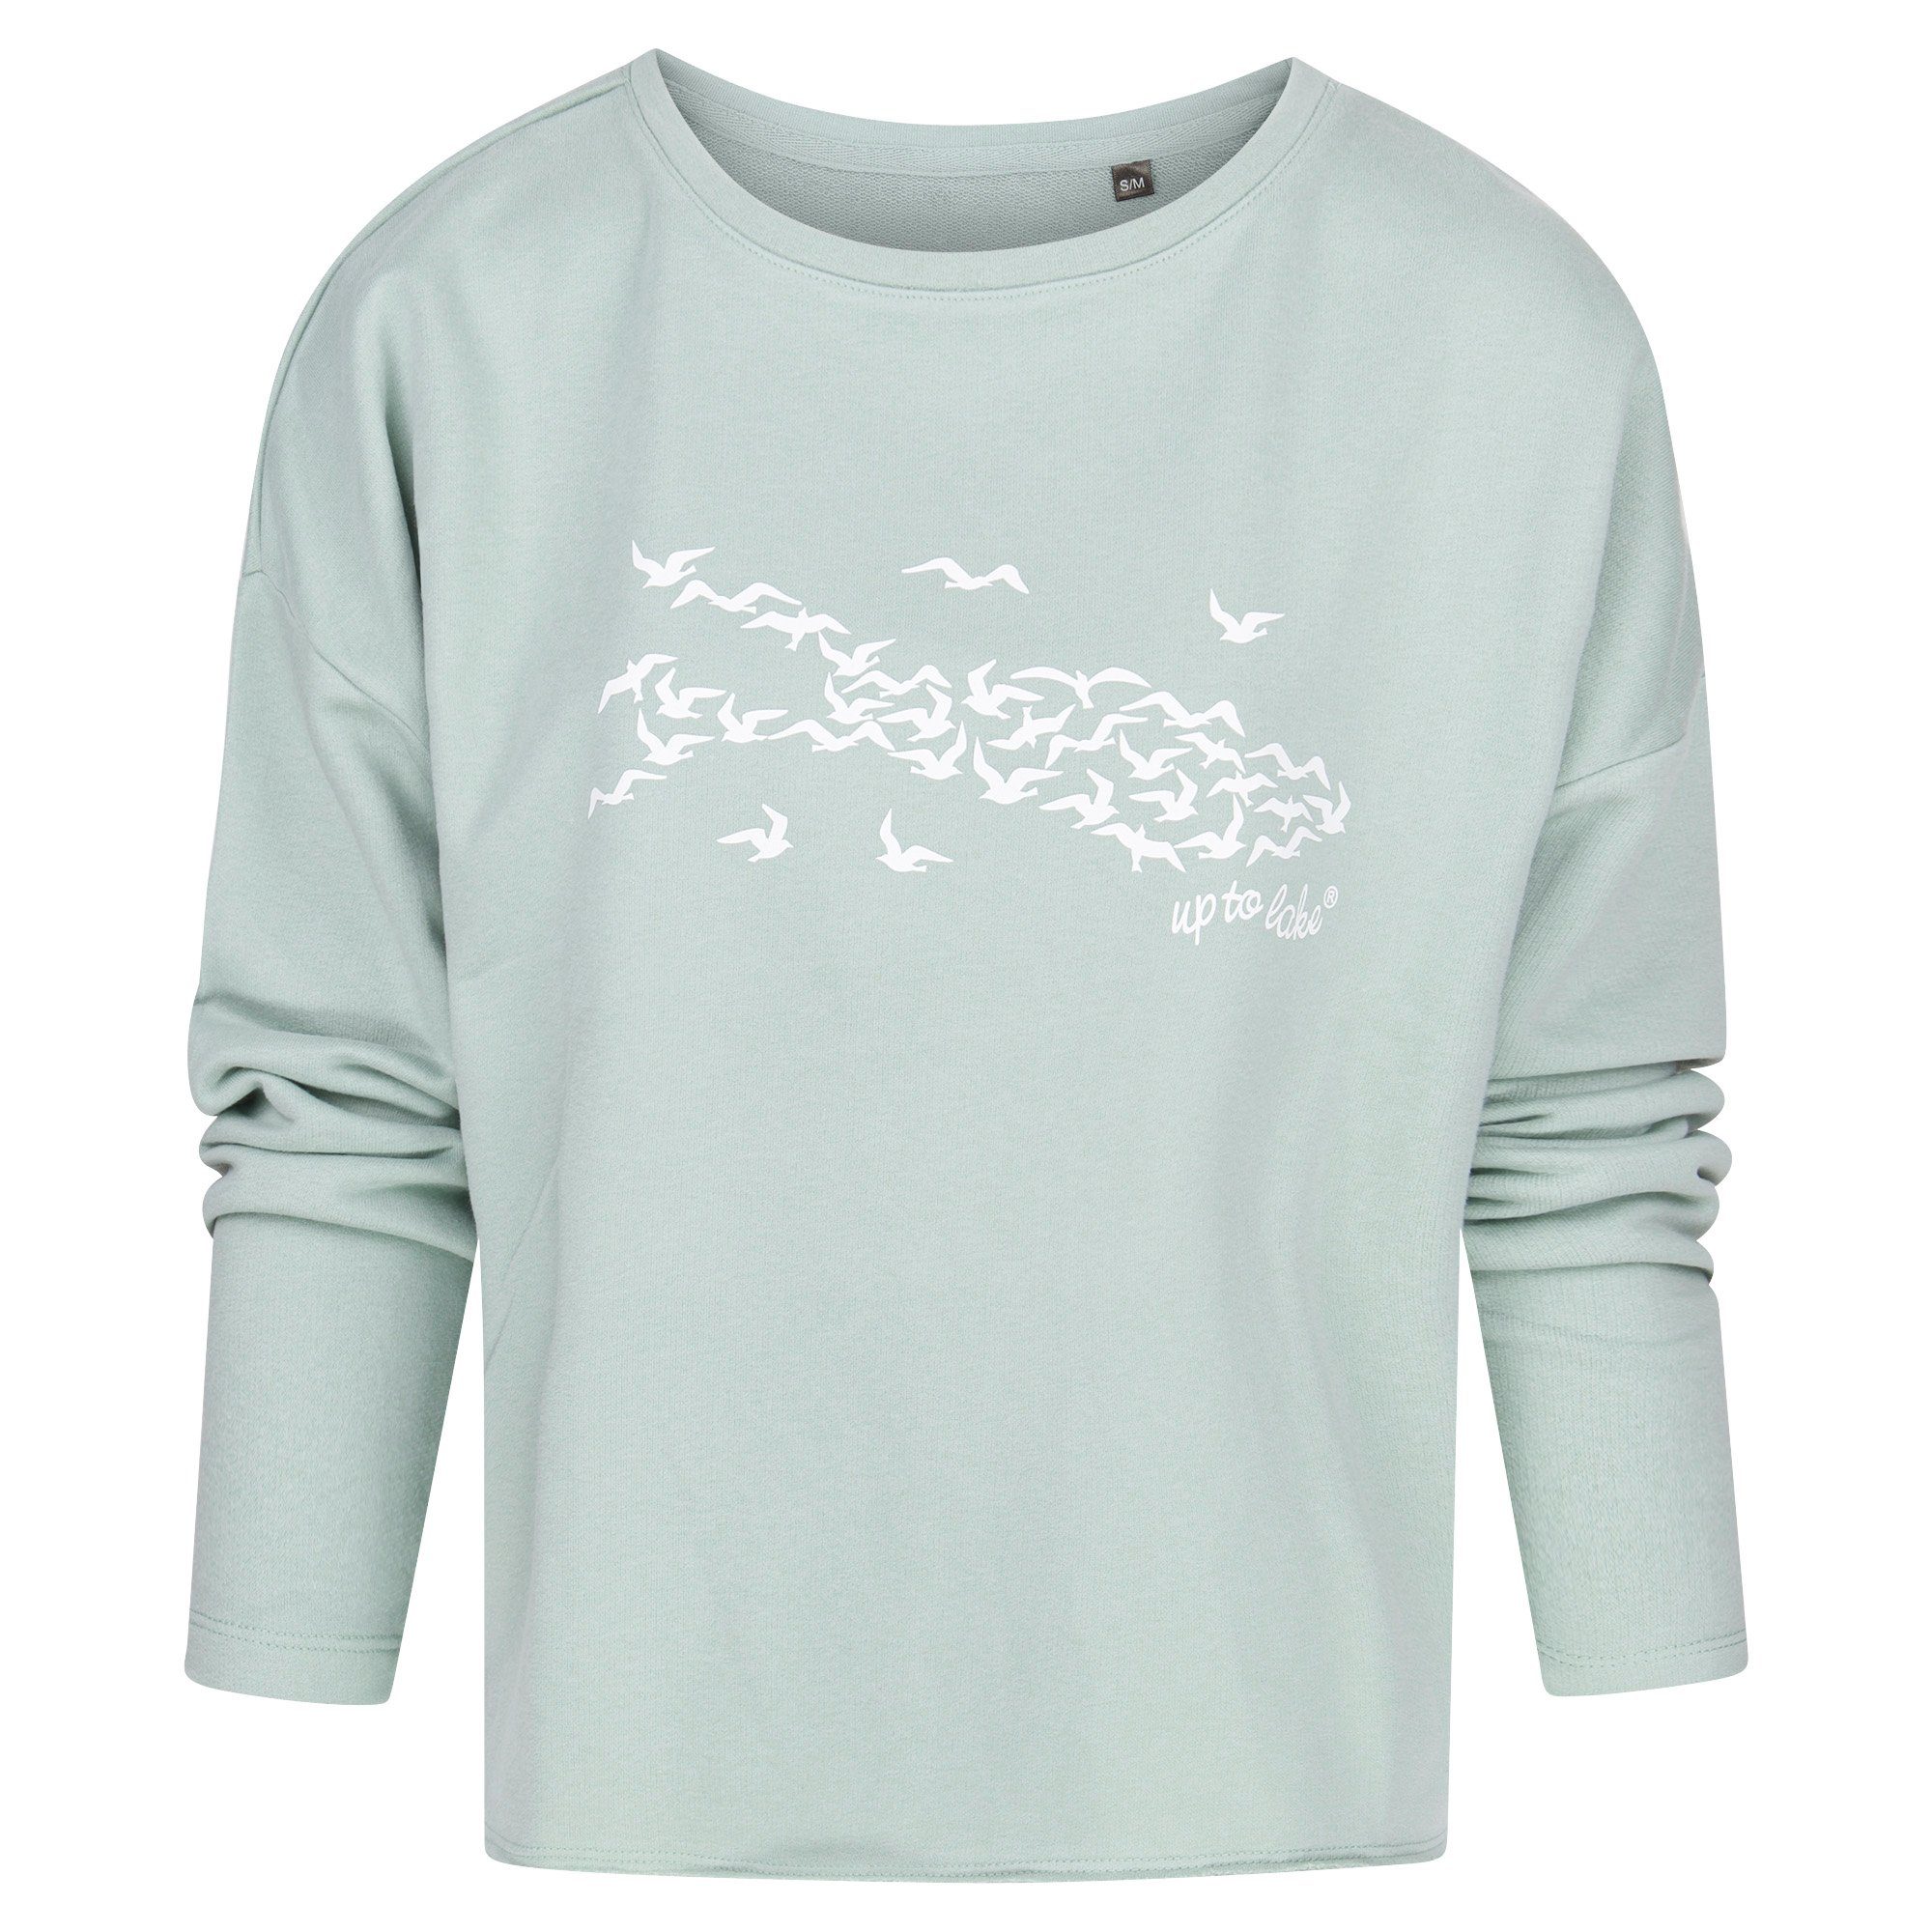 uptolake design Sweatshirt für mit Baumwollstoff Design Sage/Weiß weichem "Mövensee-Bodensee" aus Damen